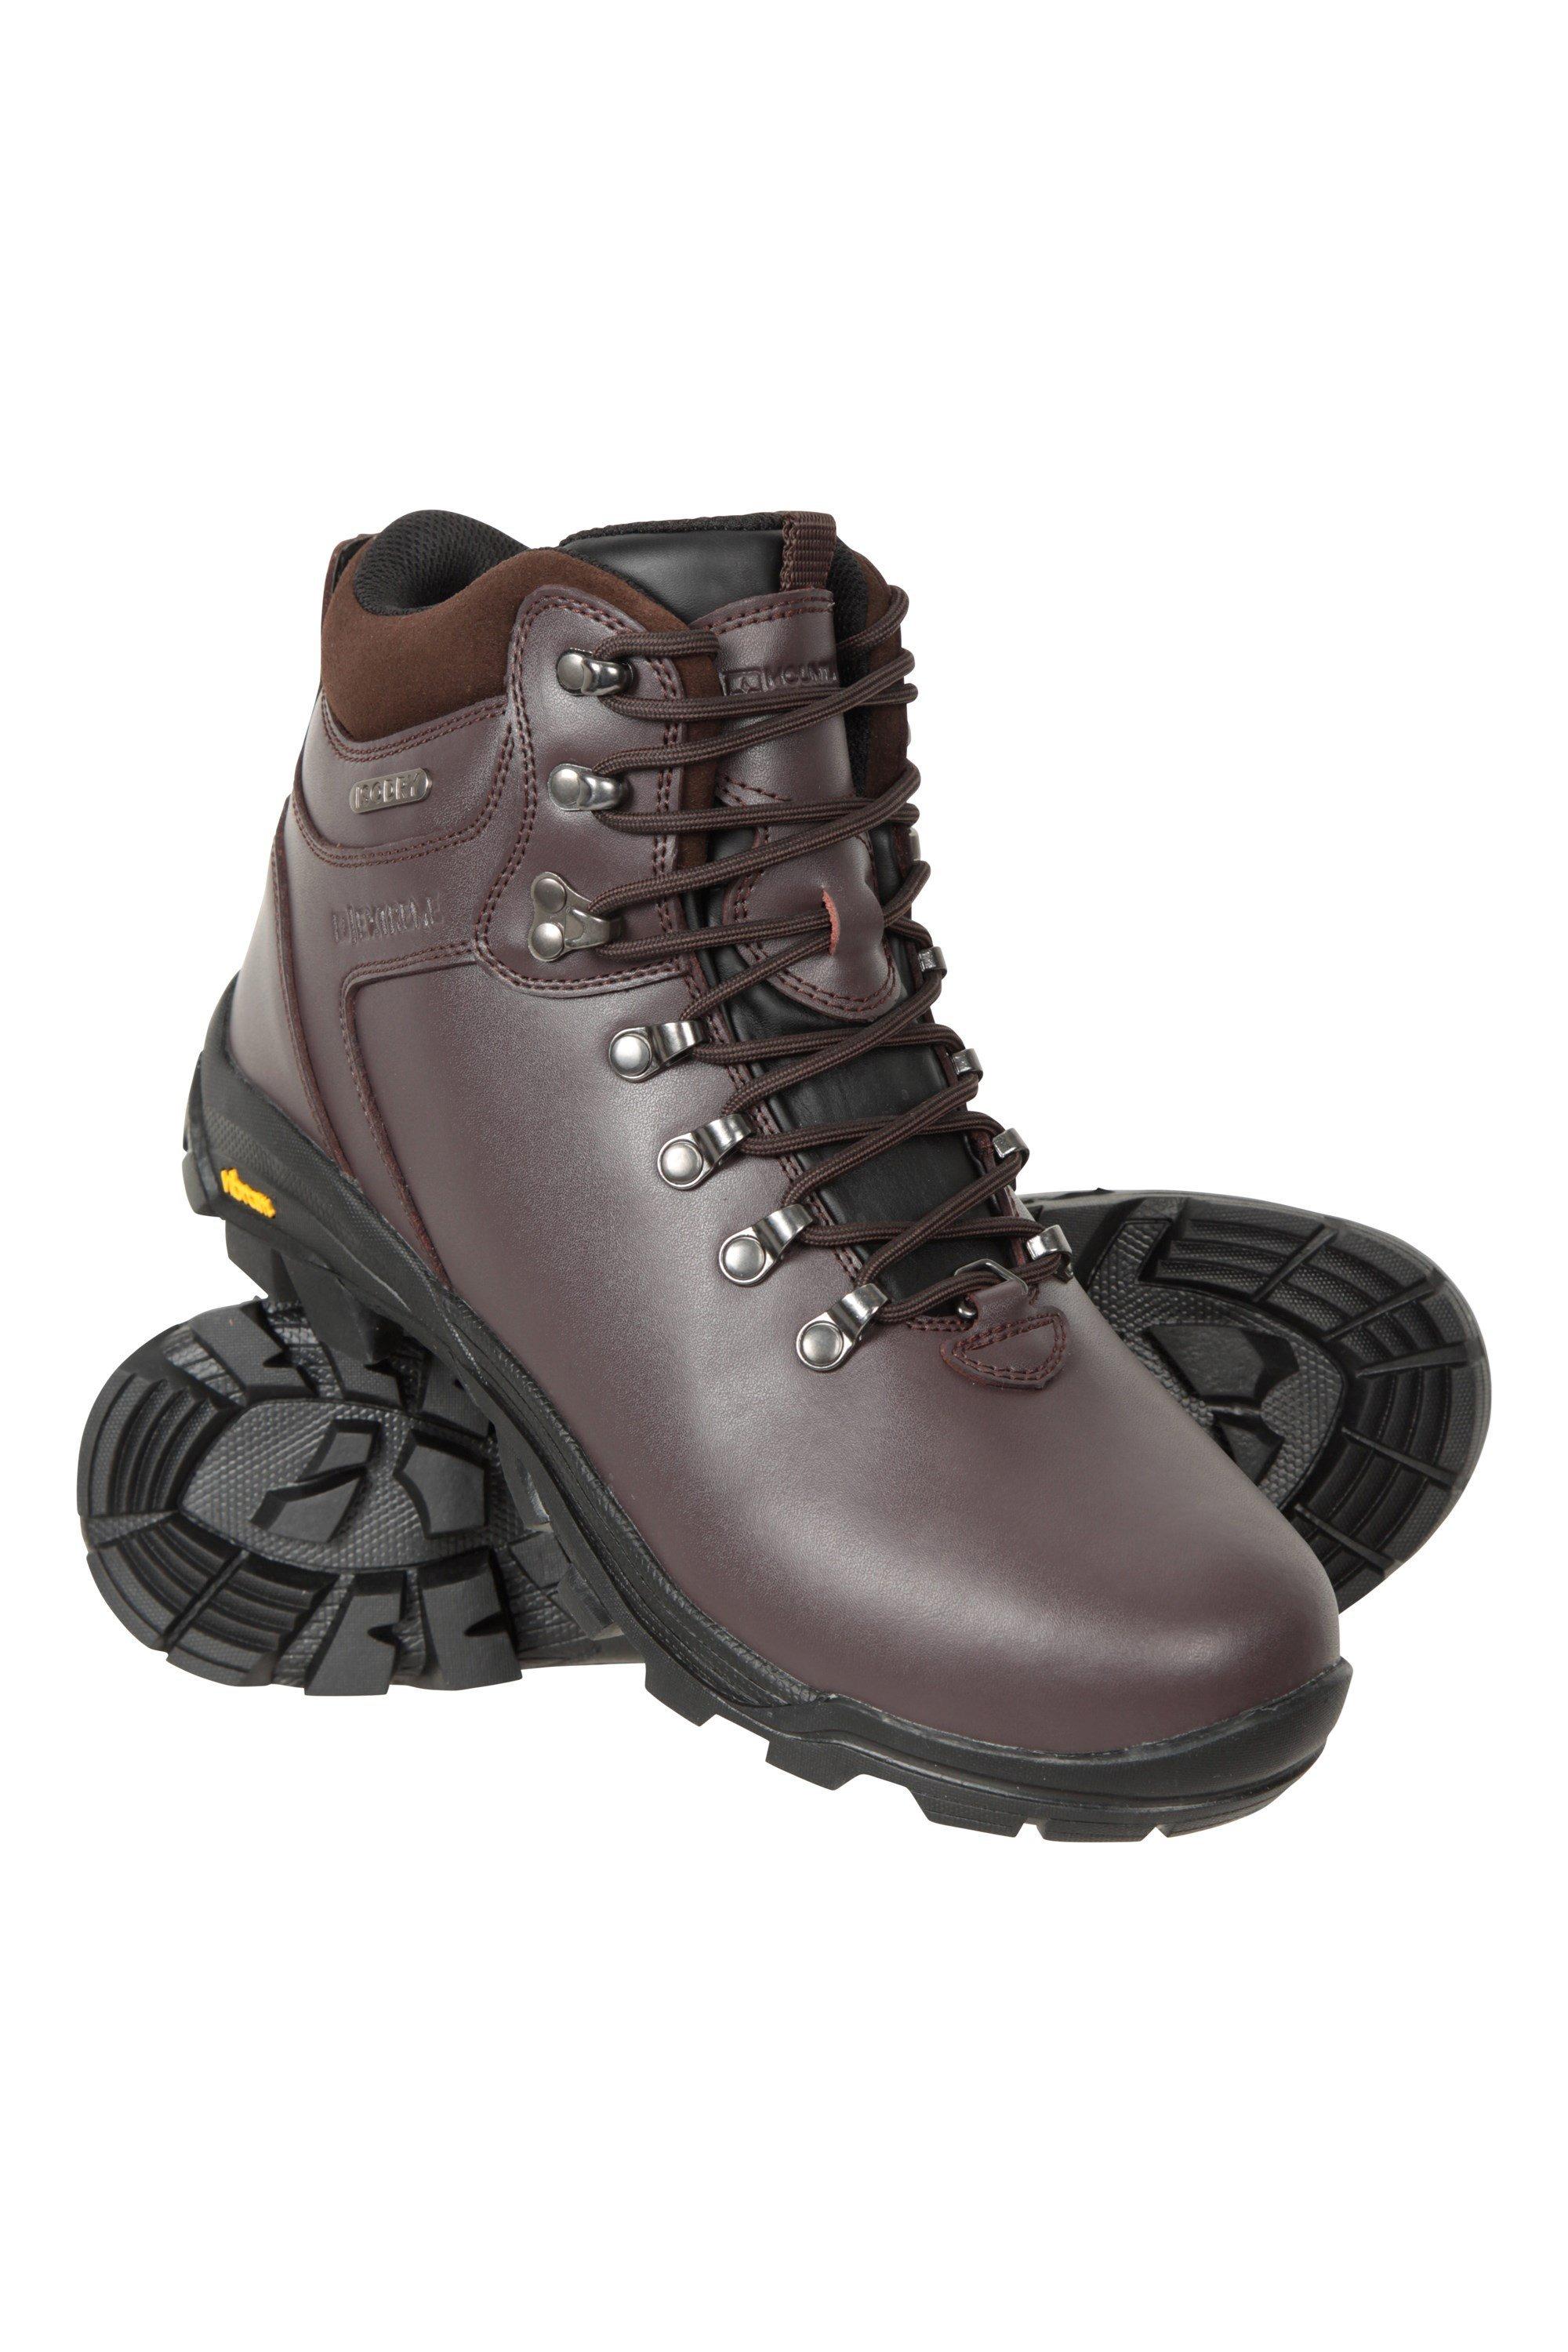 Экстремальные водонепроницаемые ботинки на подошве Vibram для прогулок и походов Mountain Warehouse, коричневый